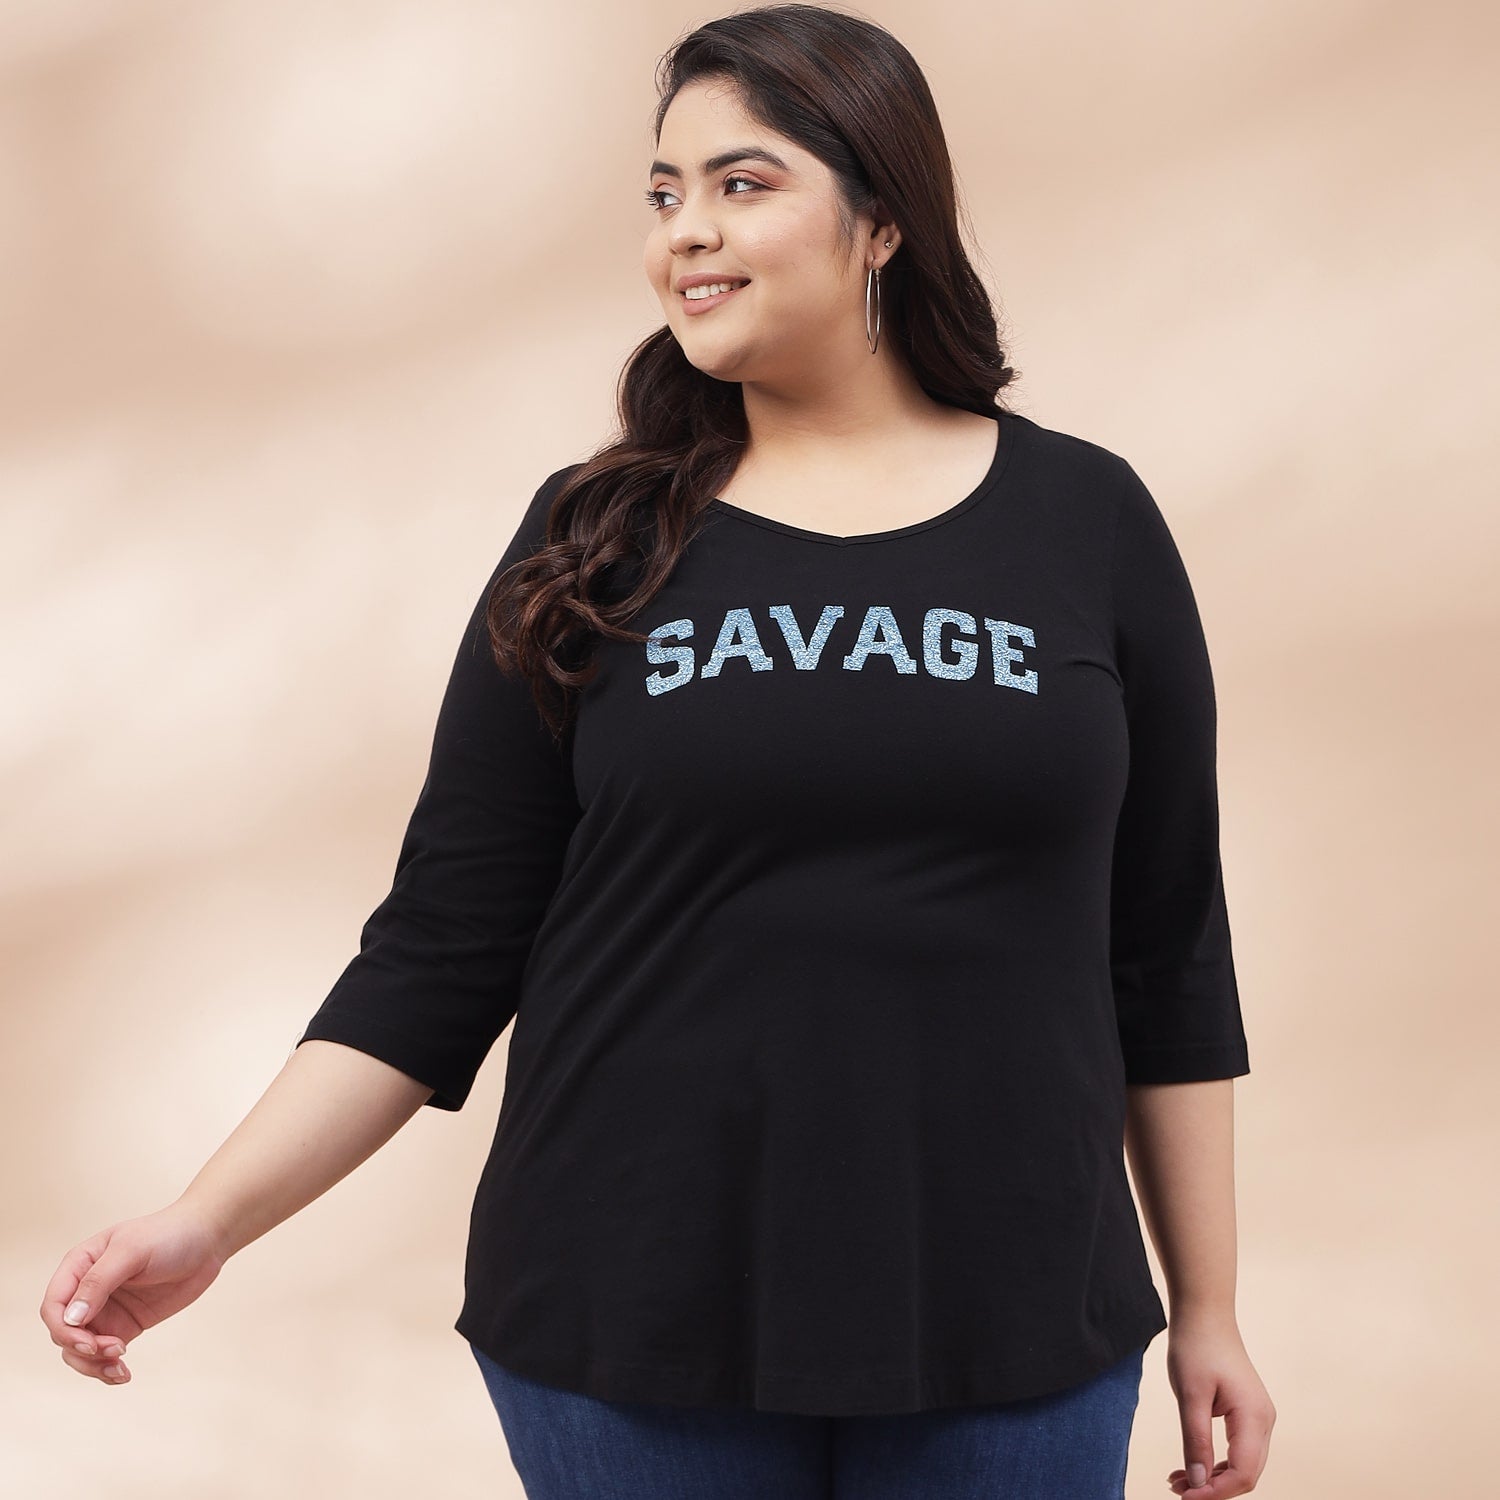 Buy Savage Black Tshirt